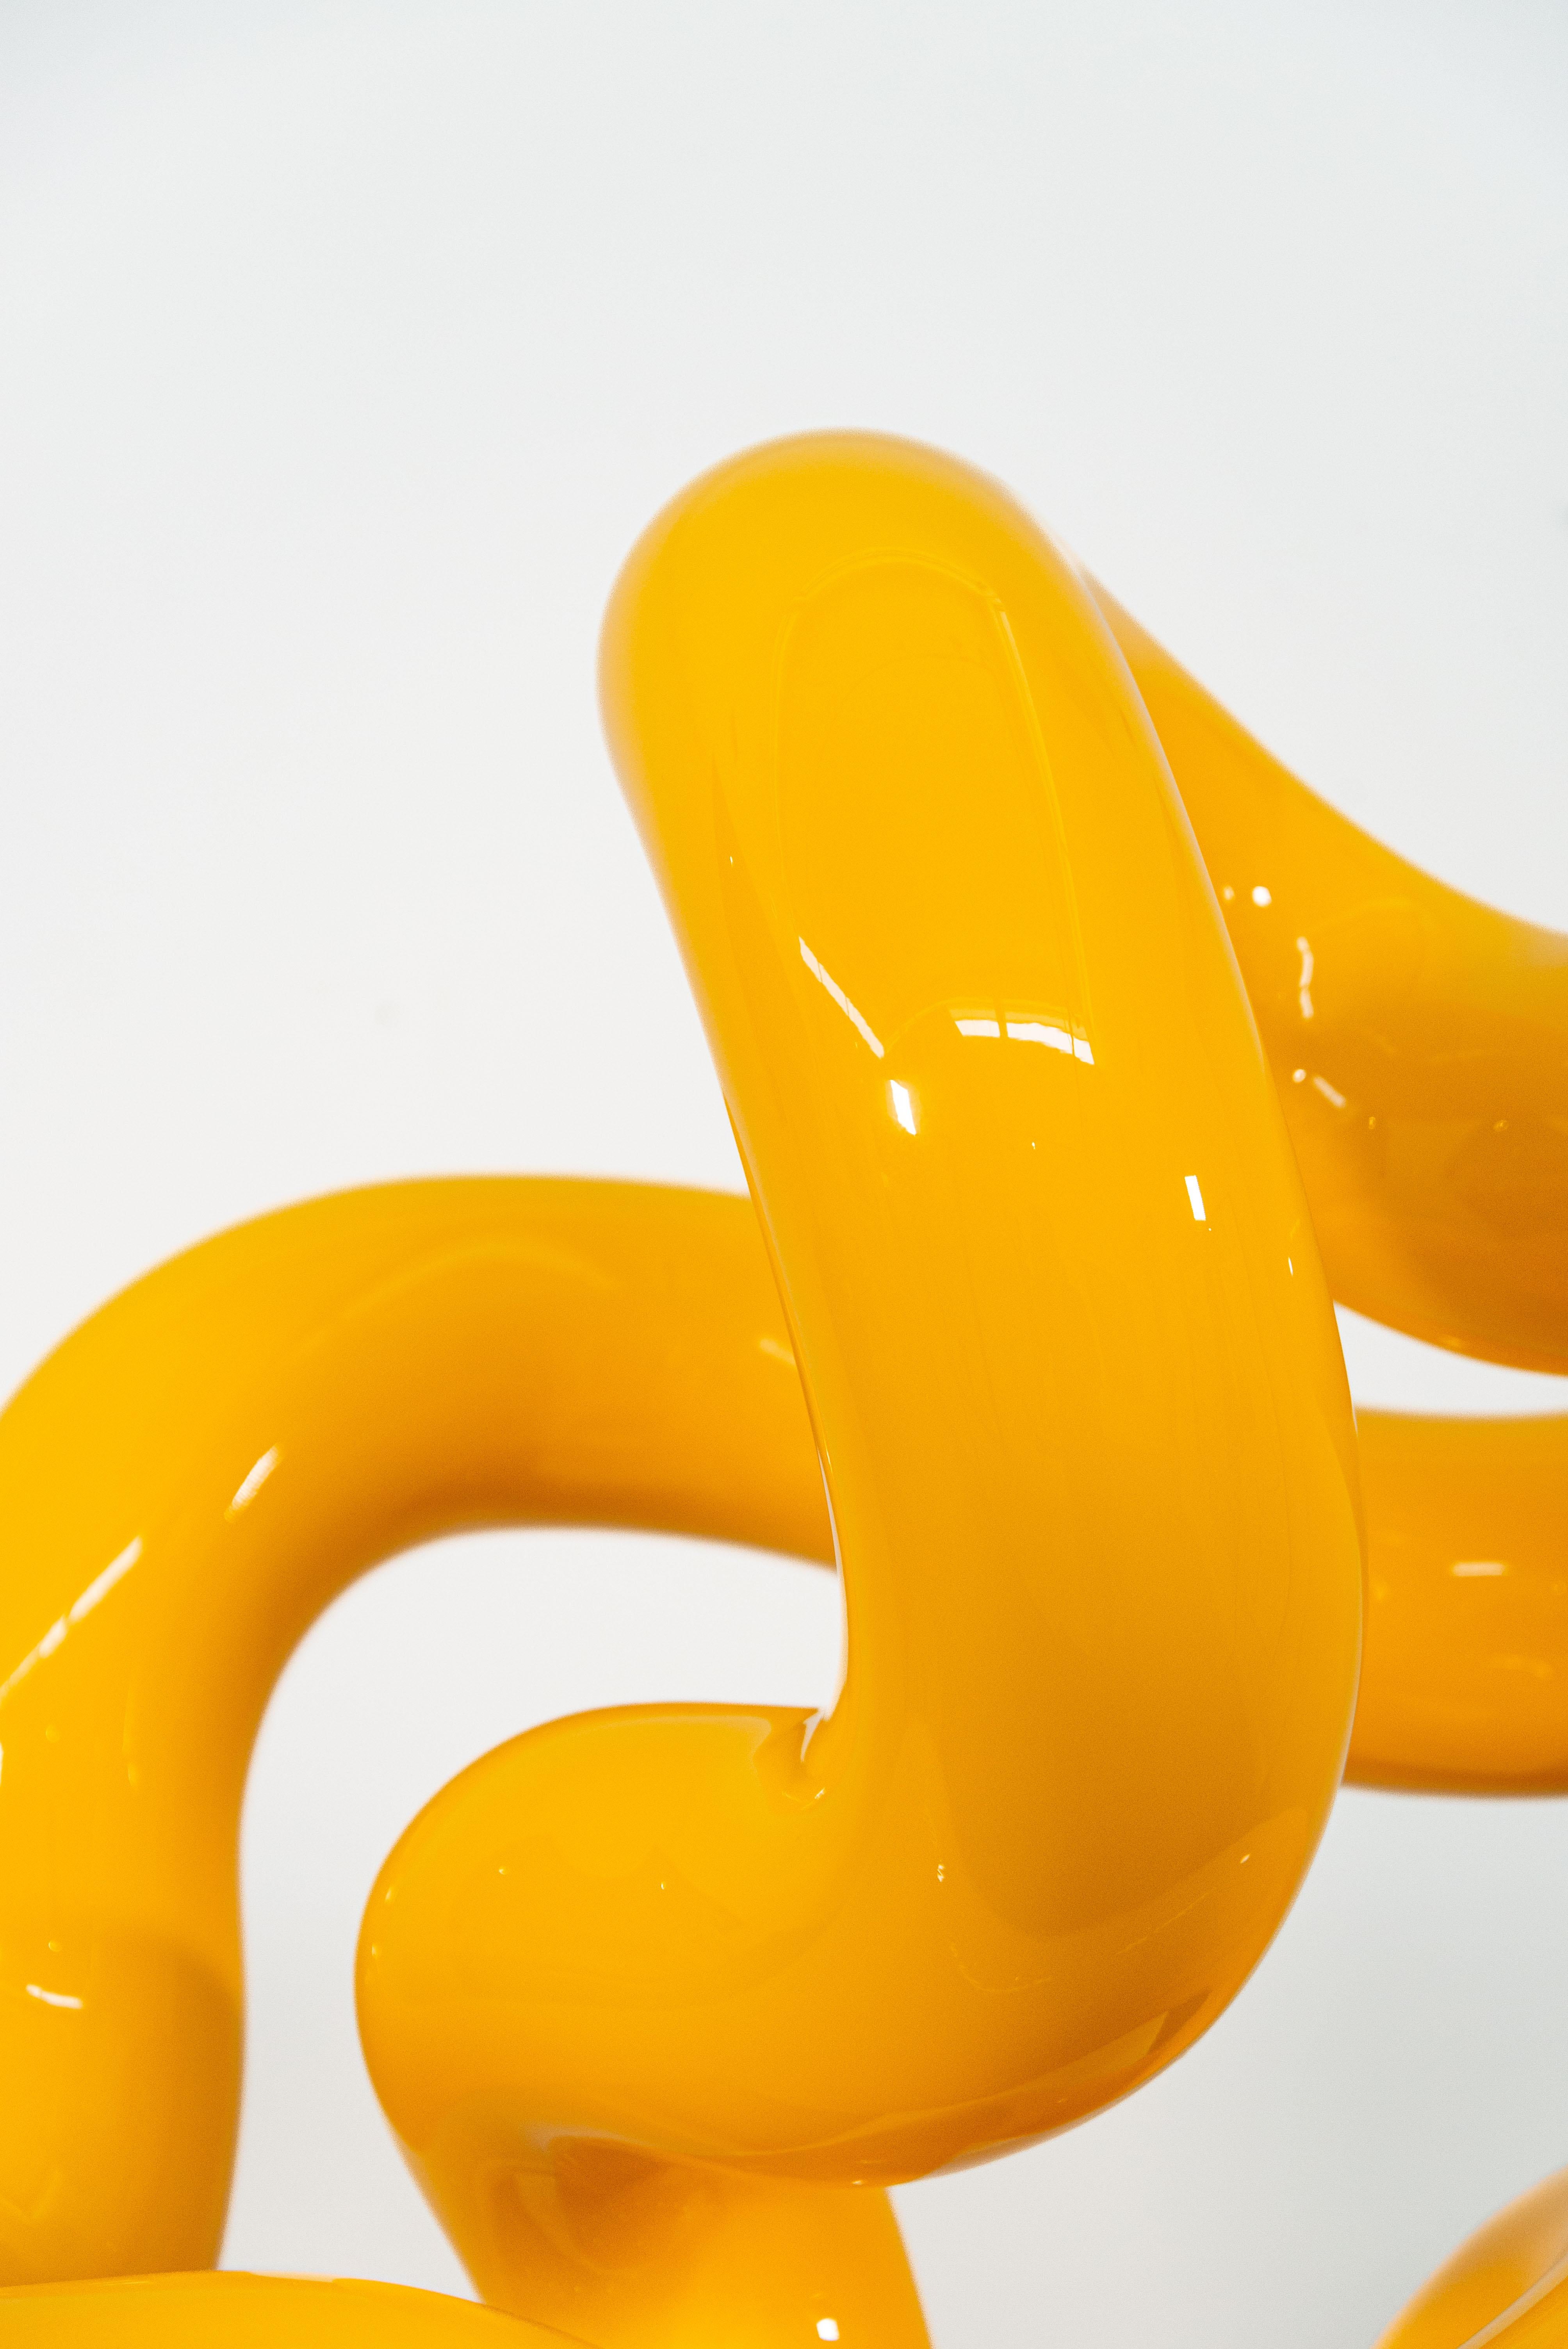 La couleur jaune vif et brillante de cette sculpture attachante accentue sa forme élégante.
Voici Alexander Caldwell. L'artiste basé à Calgary est connu pour ses pièces ludiques et minimalistes forgées à partir d'acier inoxydable et recouvertes